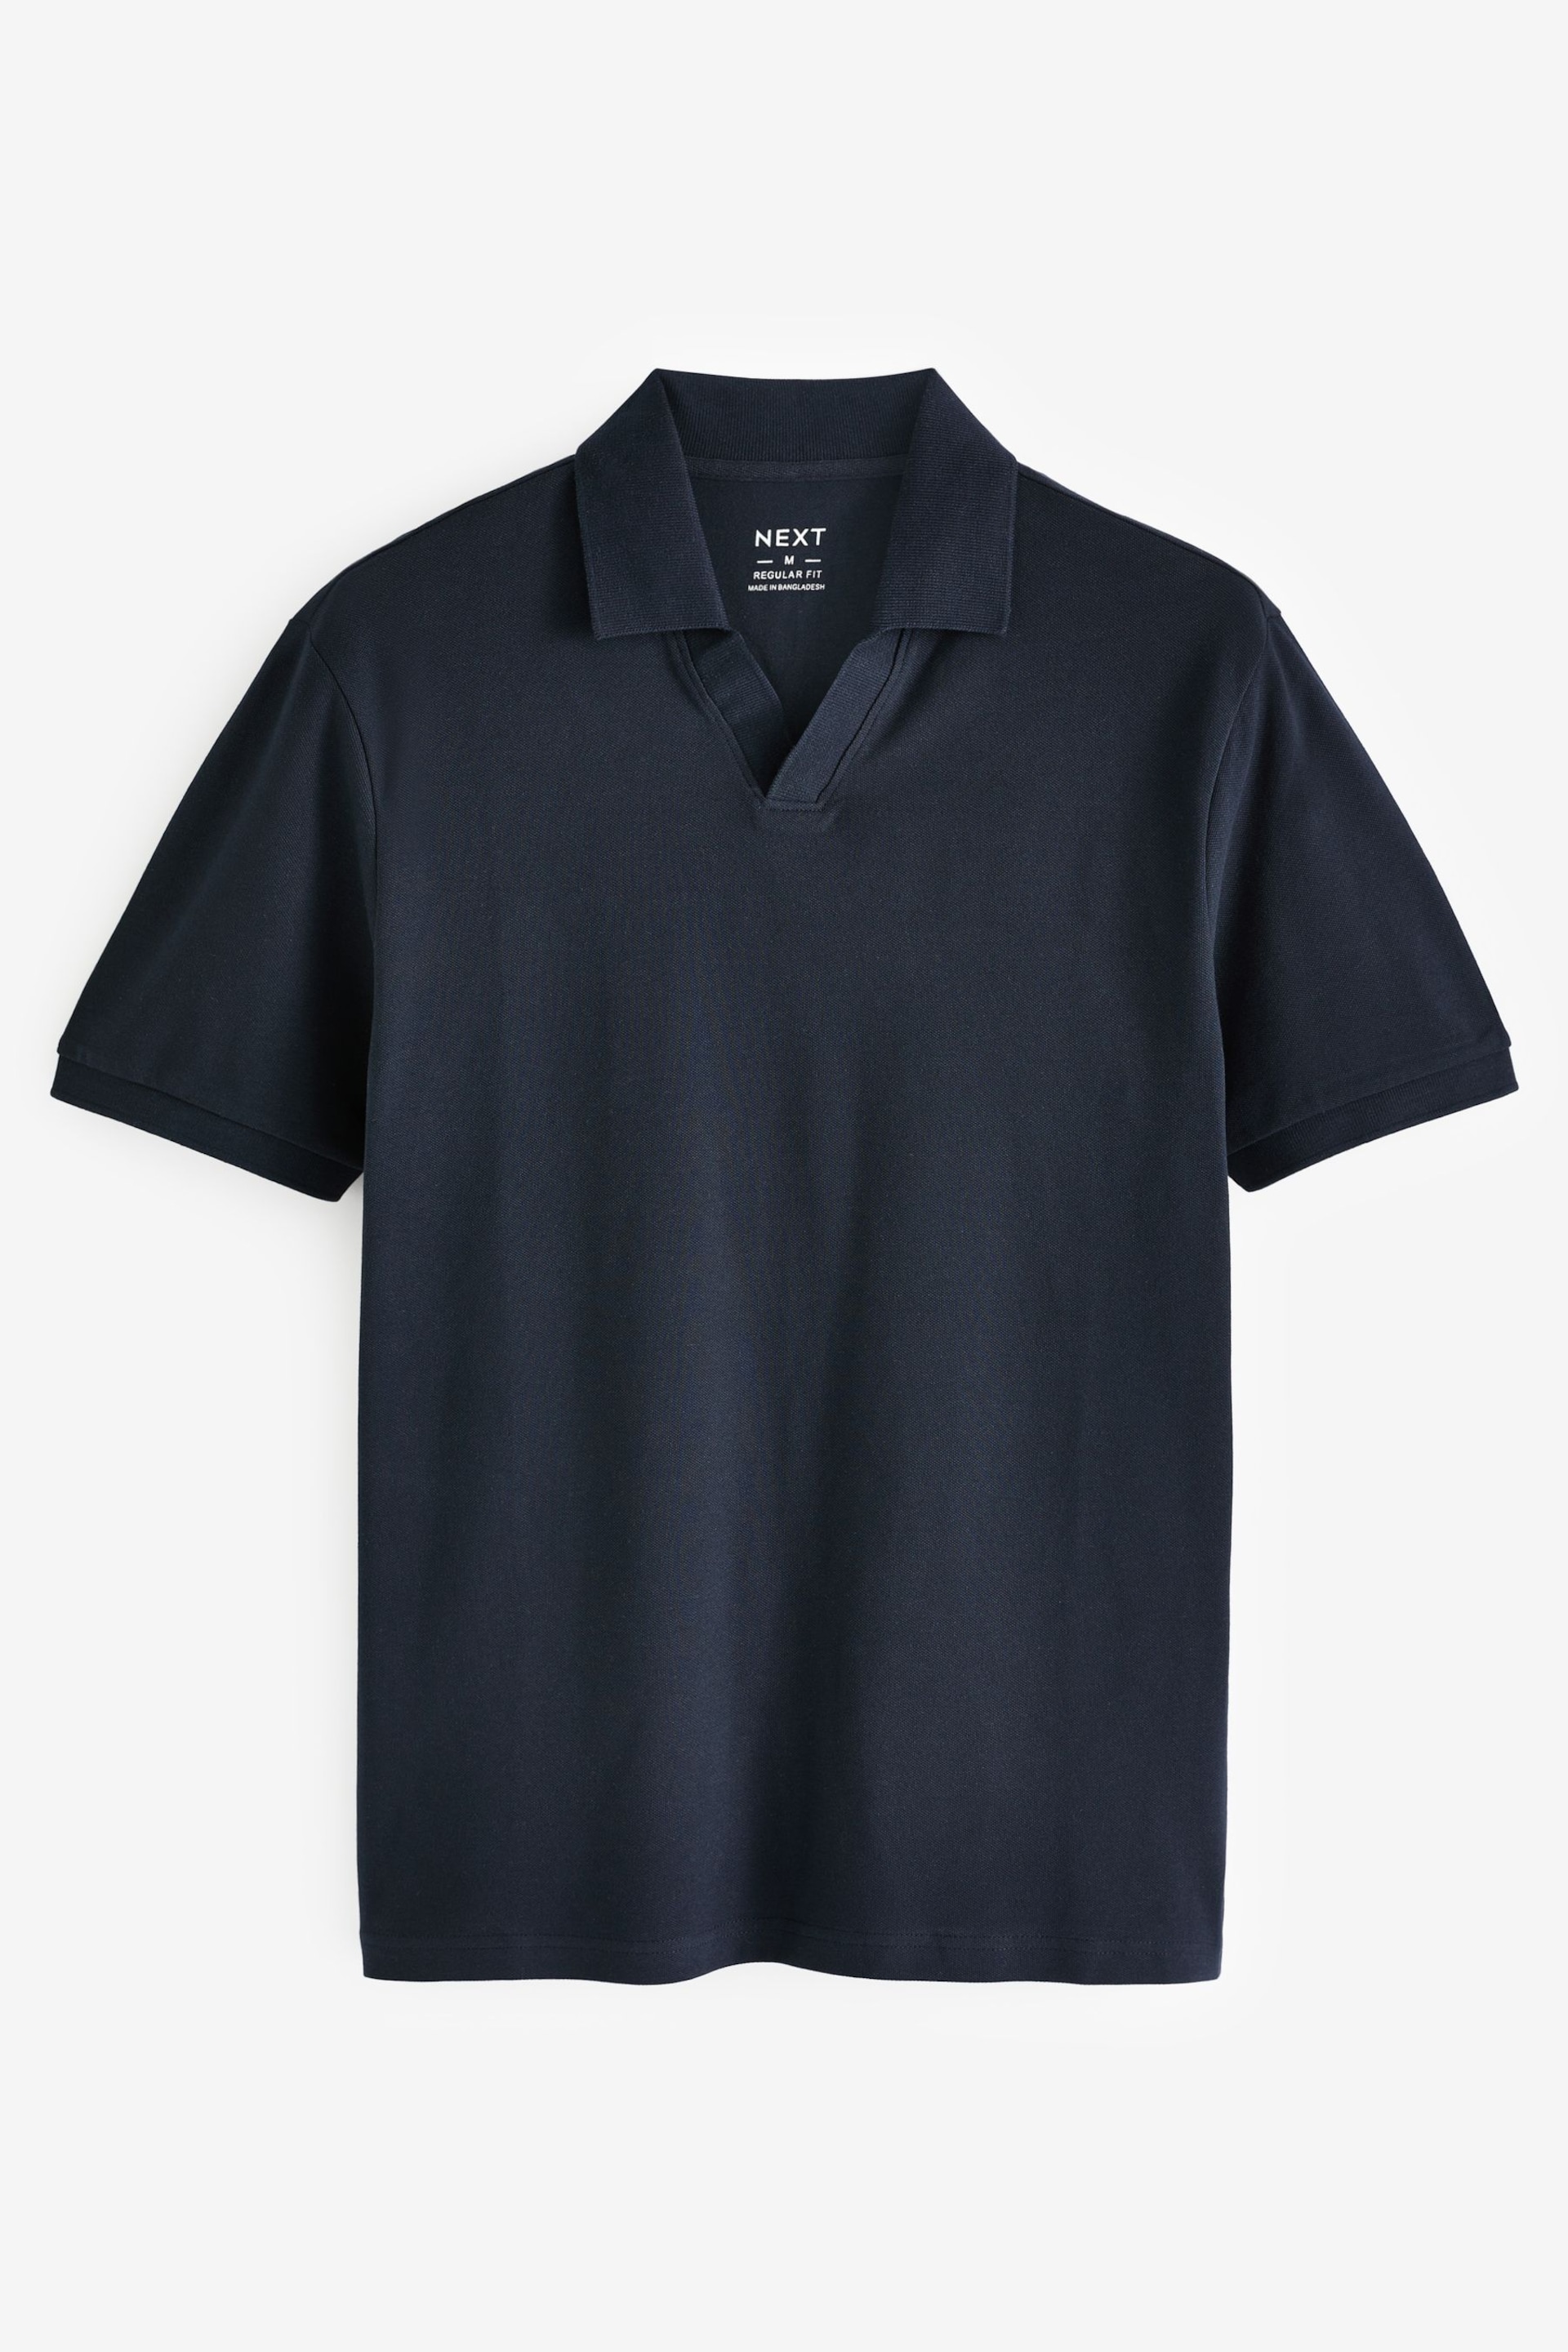 Navy Cuban Collar Pique Polo Shirt - Image 5 of 7